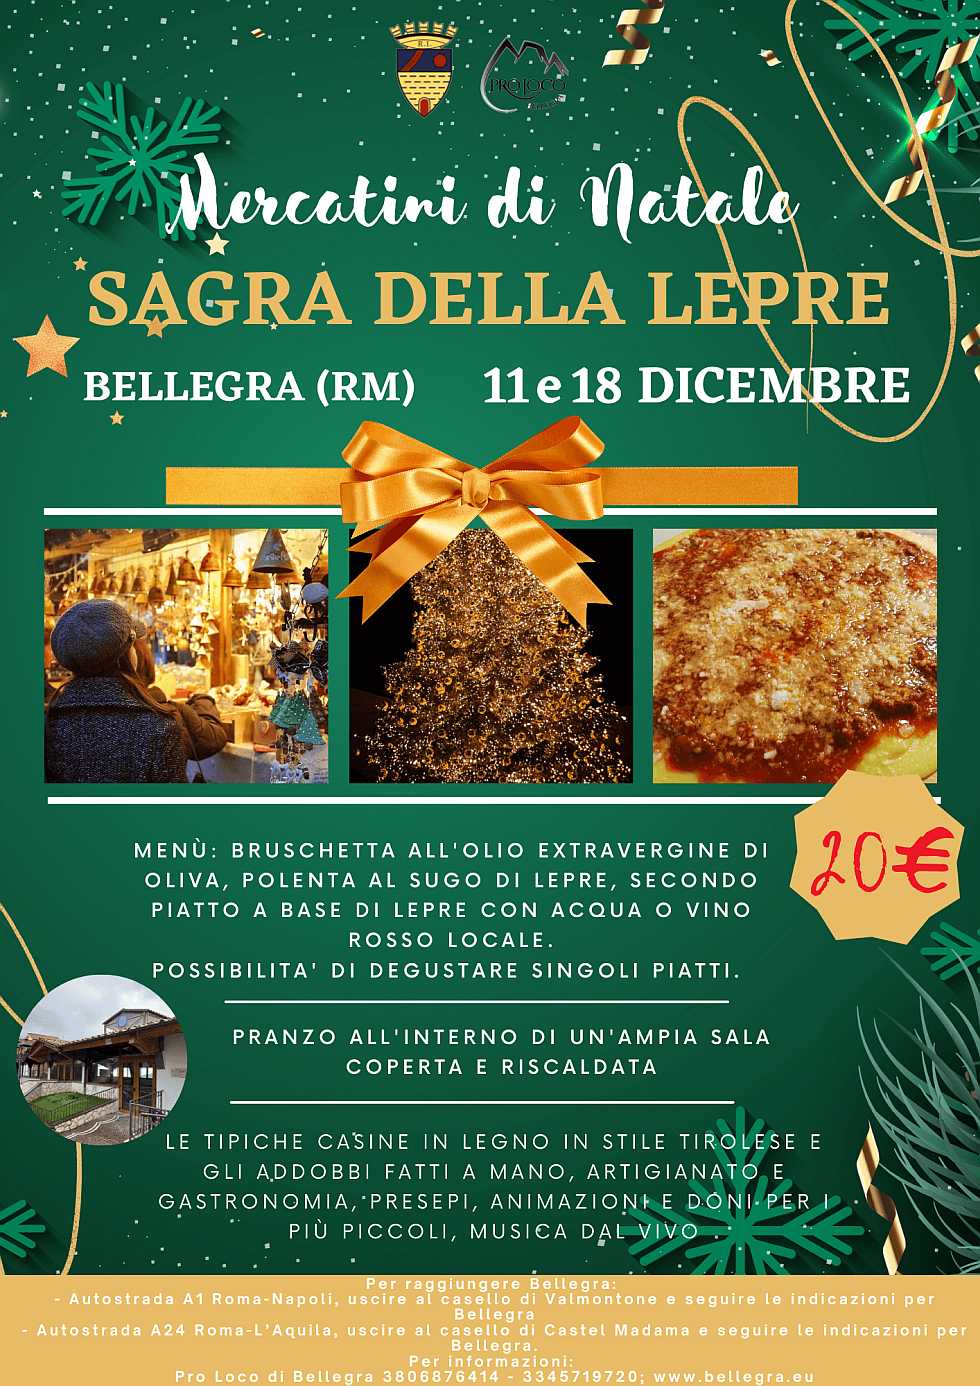 Bellegra (RM)
"Sagra della Lepre"
11 e 18 Dicembre 2022